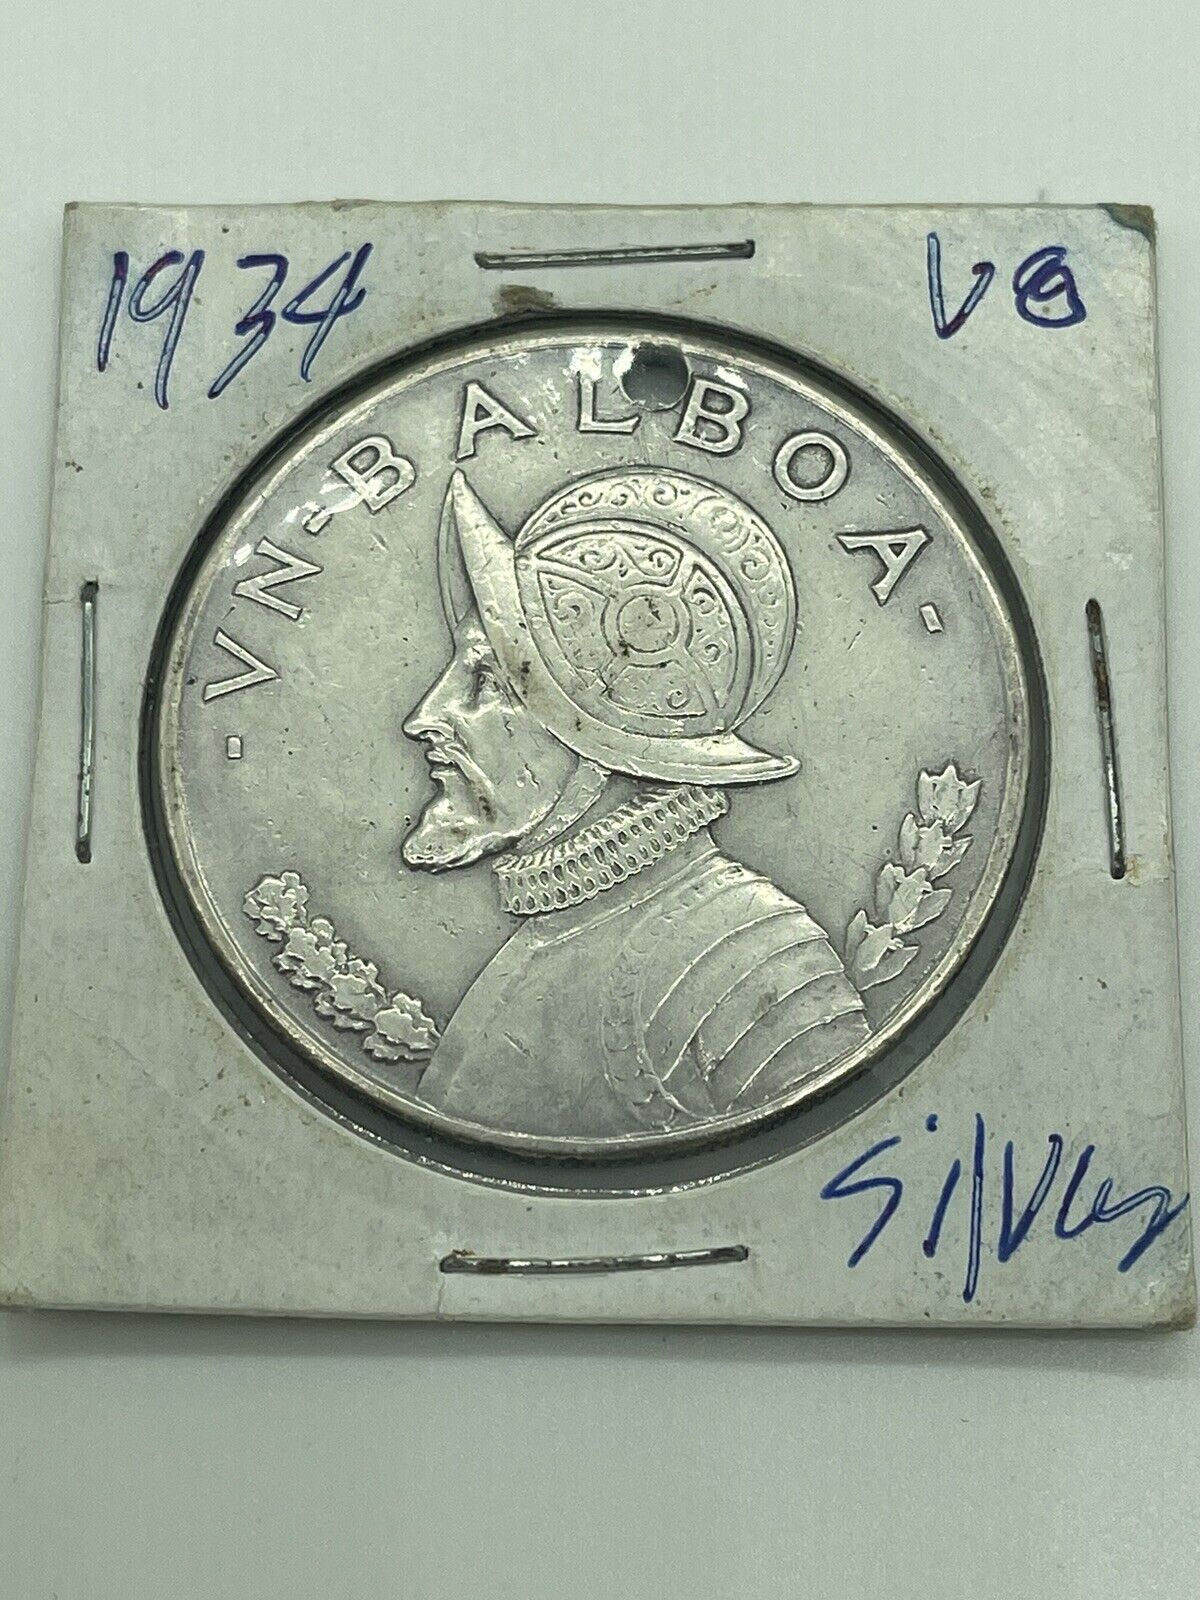 1934 Panama Balboa Silver Coin Has Hole